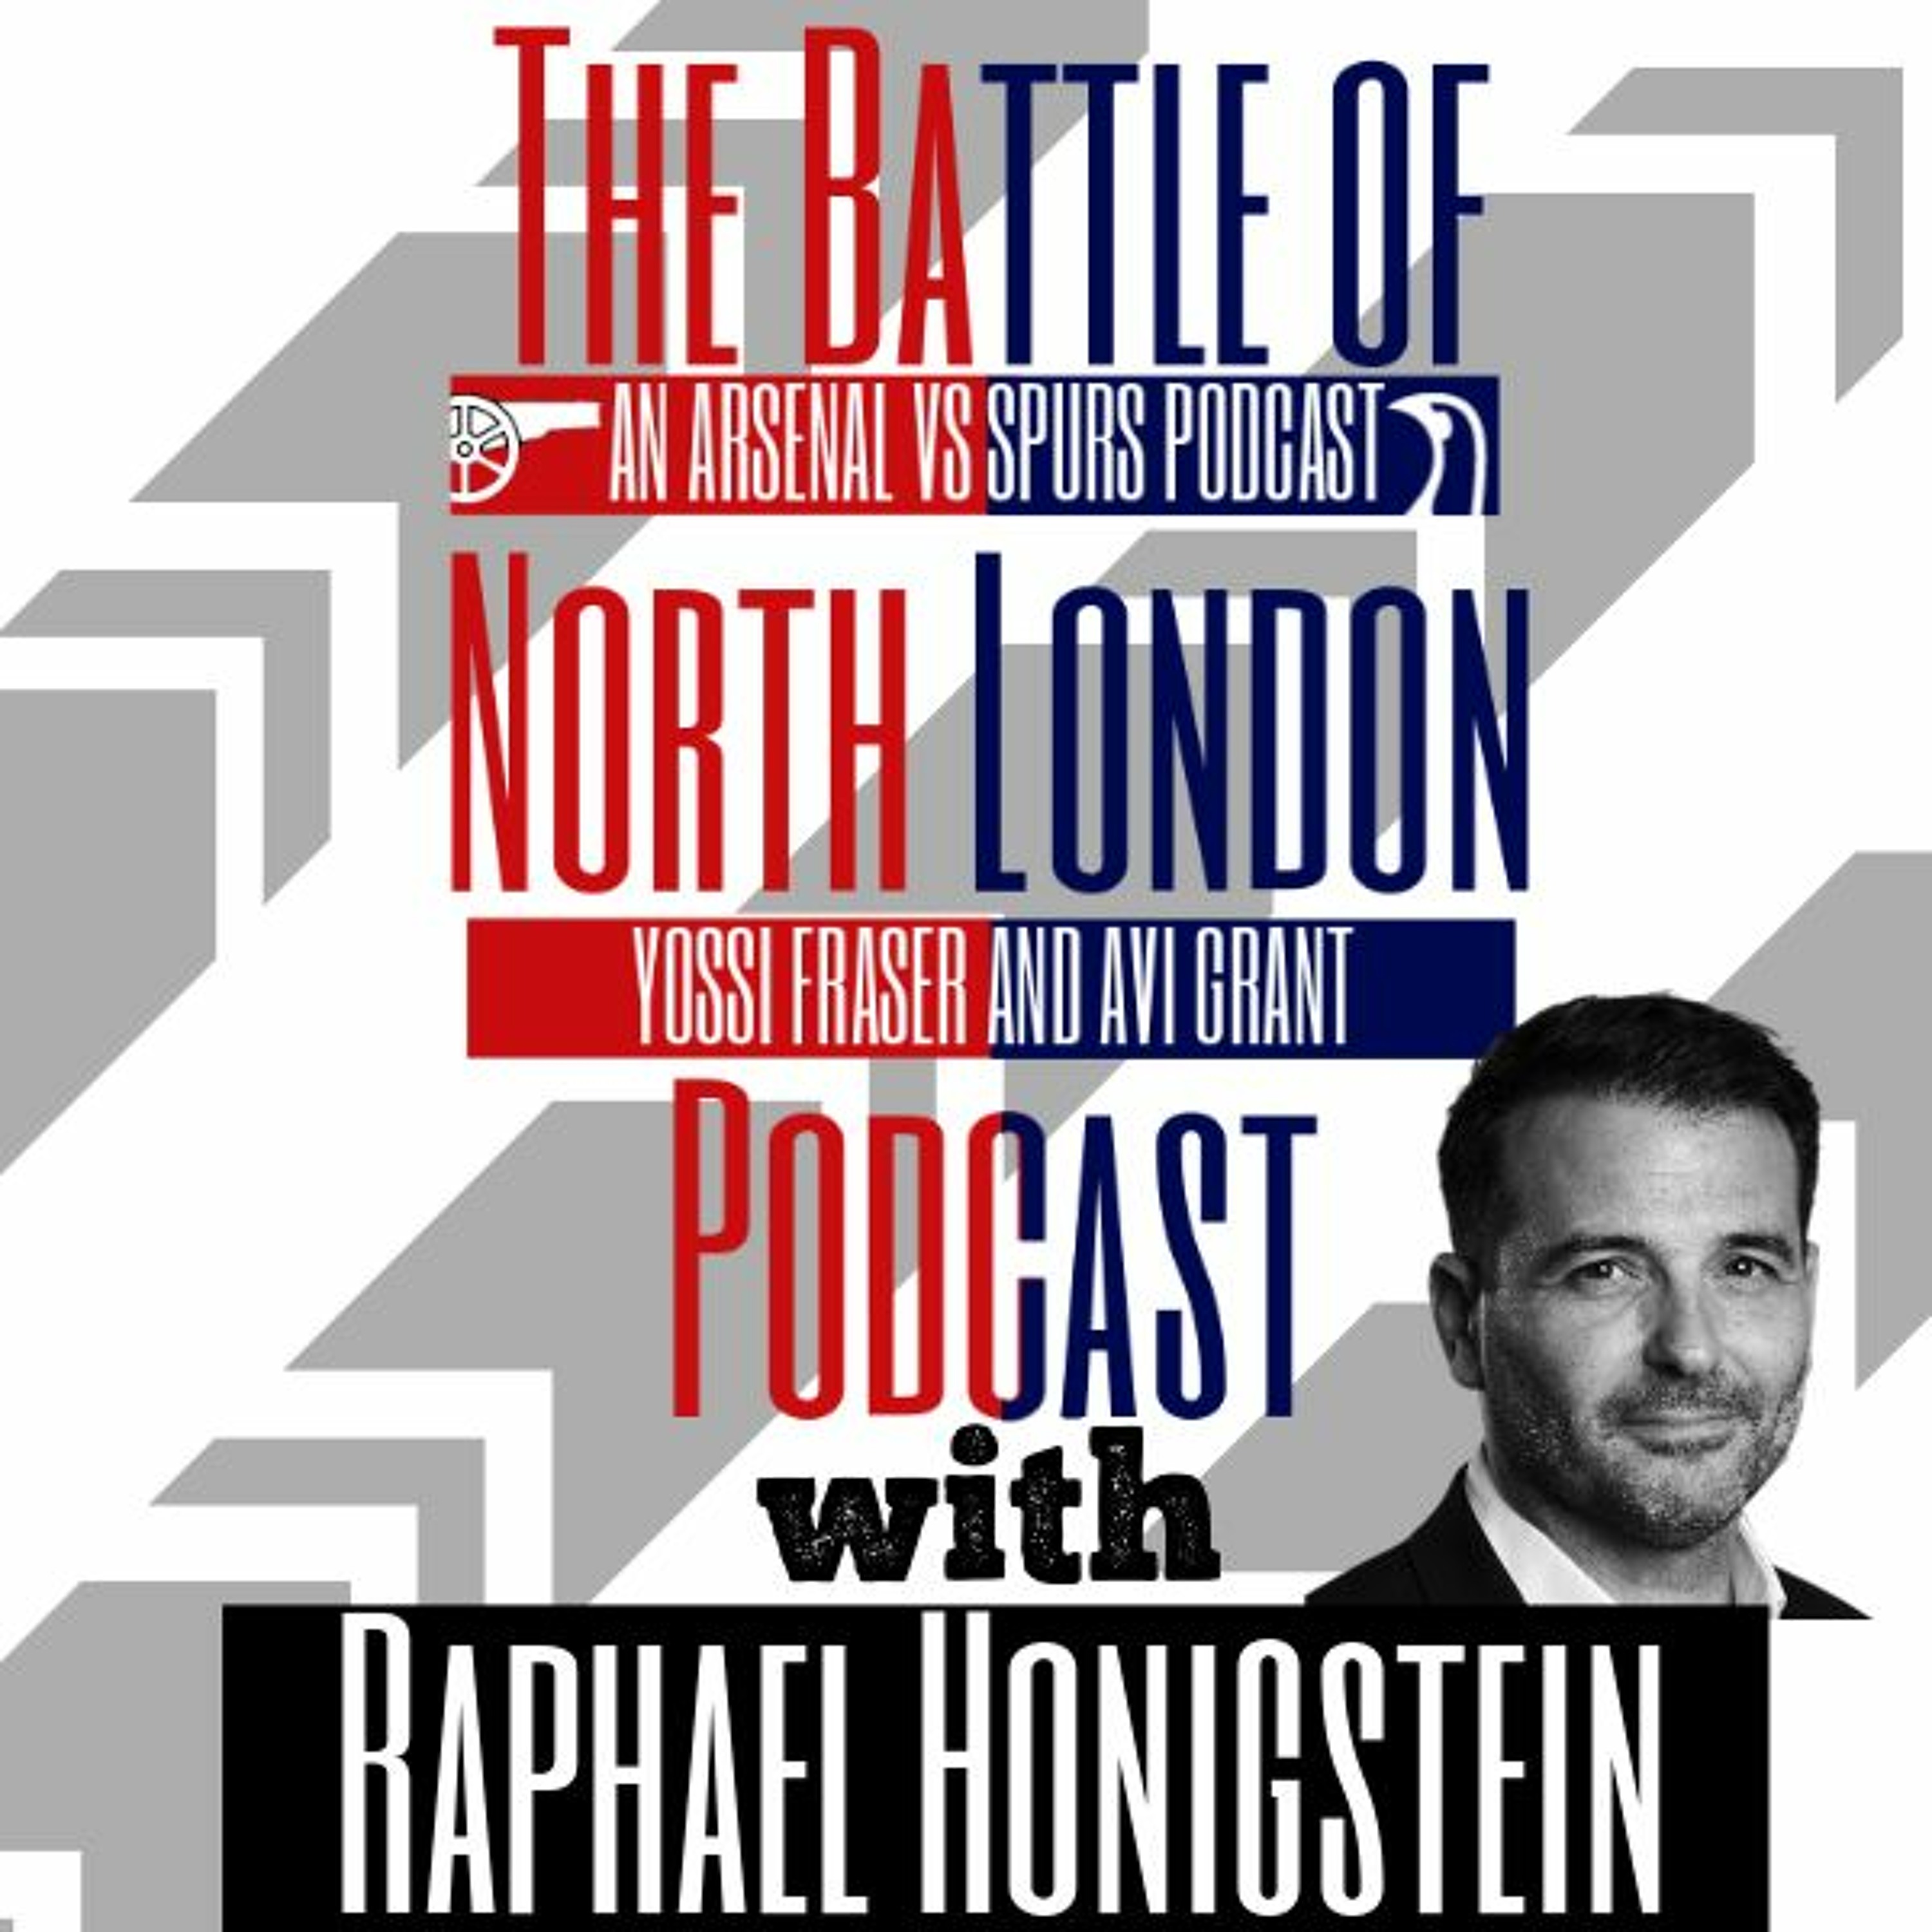 Episode 19: RAPHAEL HONNIGSTEIN